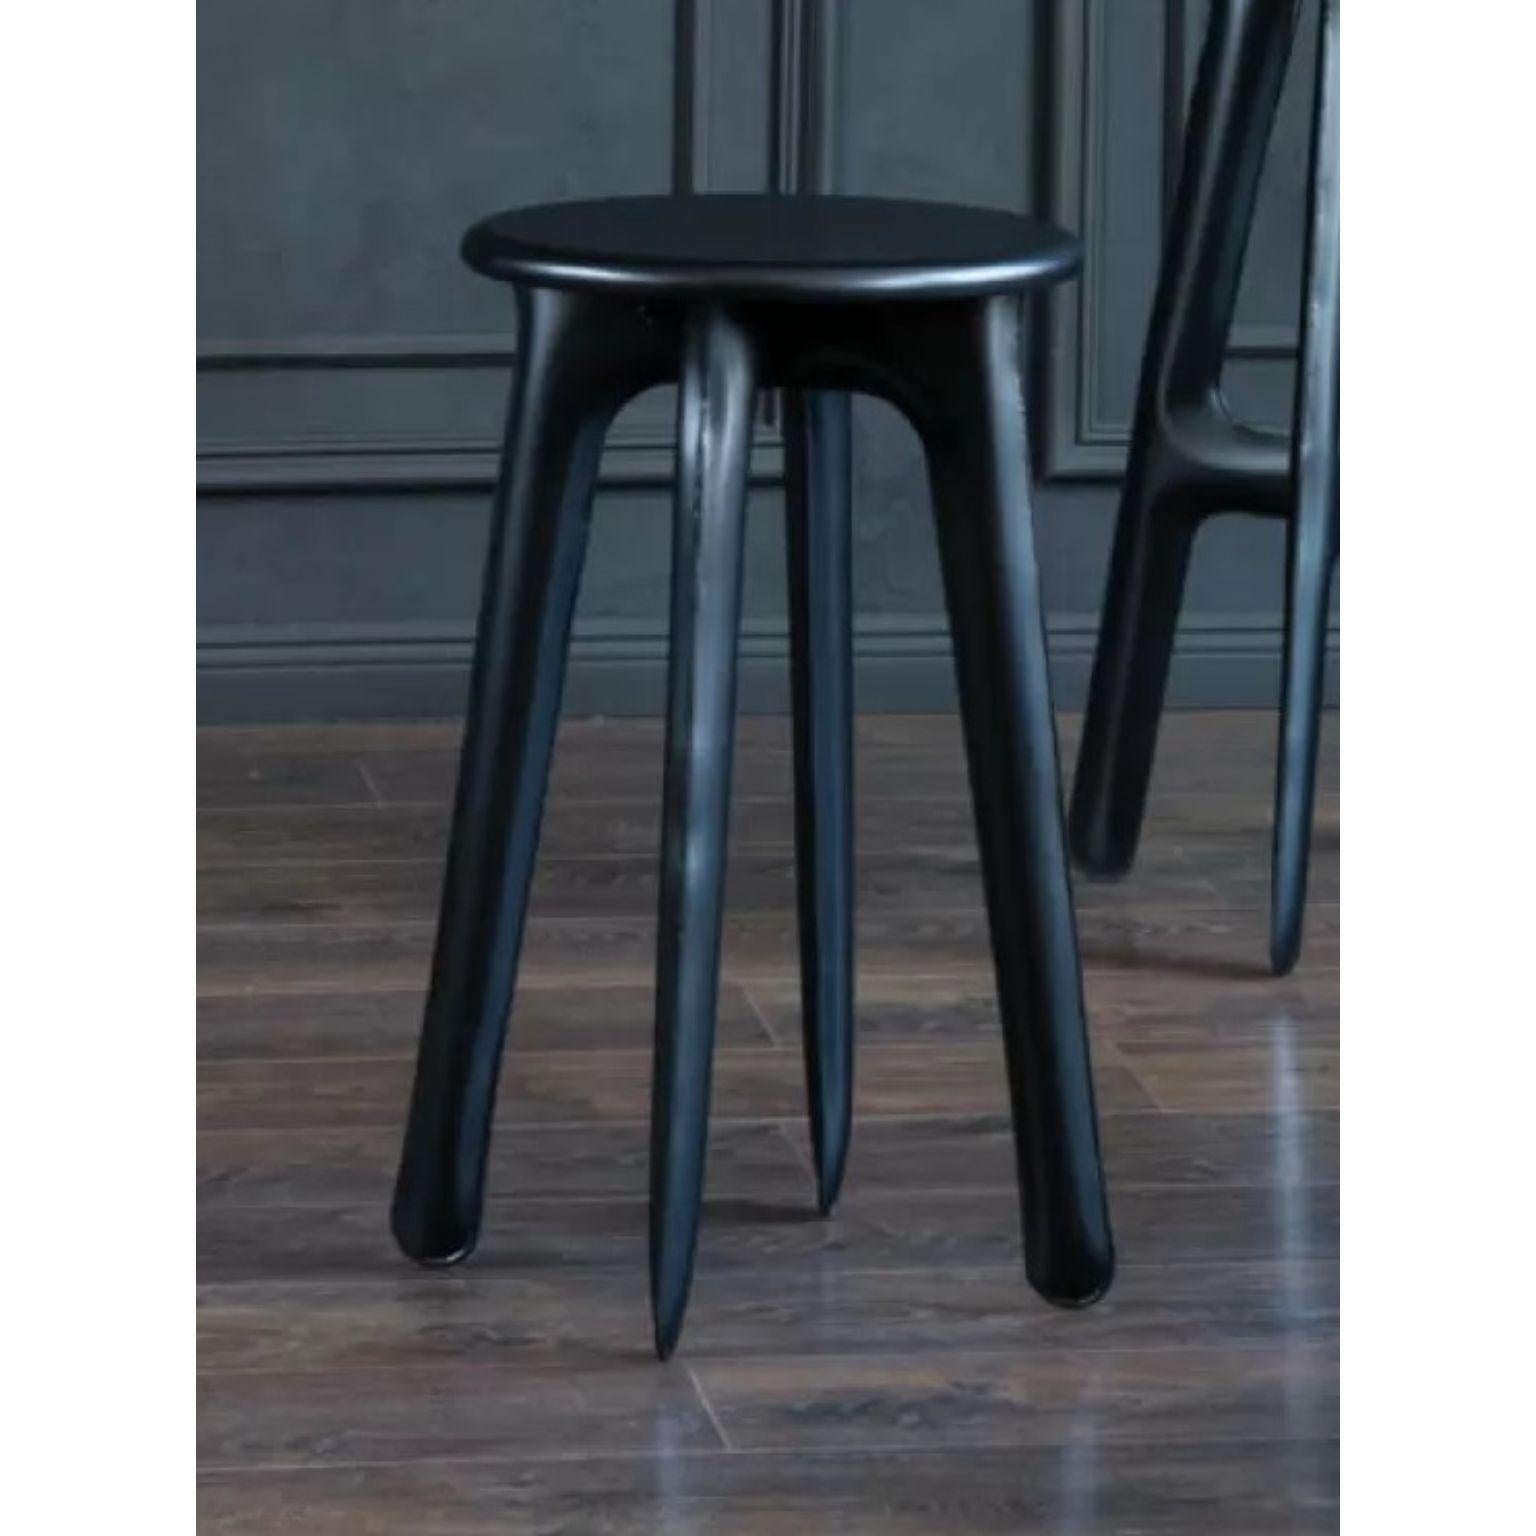 Ultraleggera Schwarzer eloxierter Küchenhocker von Zieta
Abmessungen: Ø 34 x H 60 cm.
MATERIALIEN: Aluminium.
Oberfläche: Anodisch schwarz.

Inspiriert von den Eigenschaften des Ultraleggera-Stuhls, haben wir sein Konzept um neue Objekte erweitert.